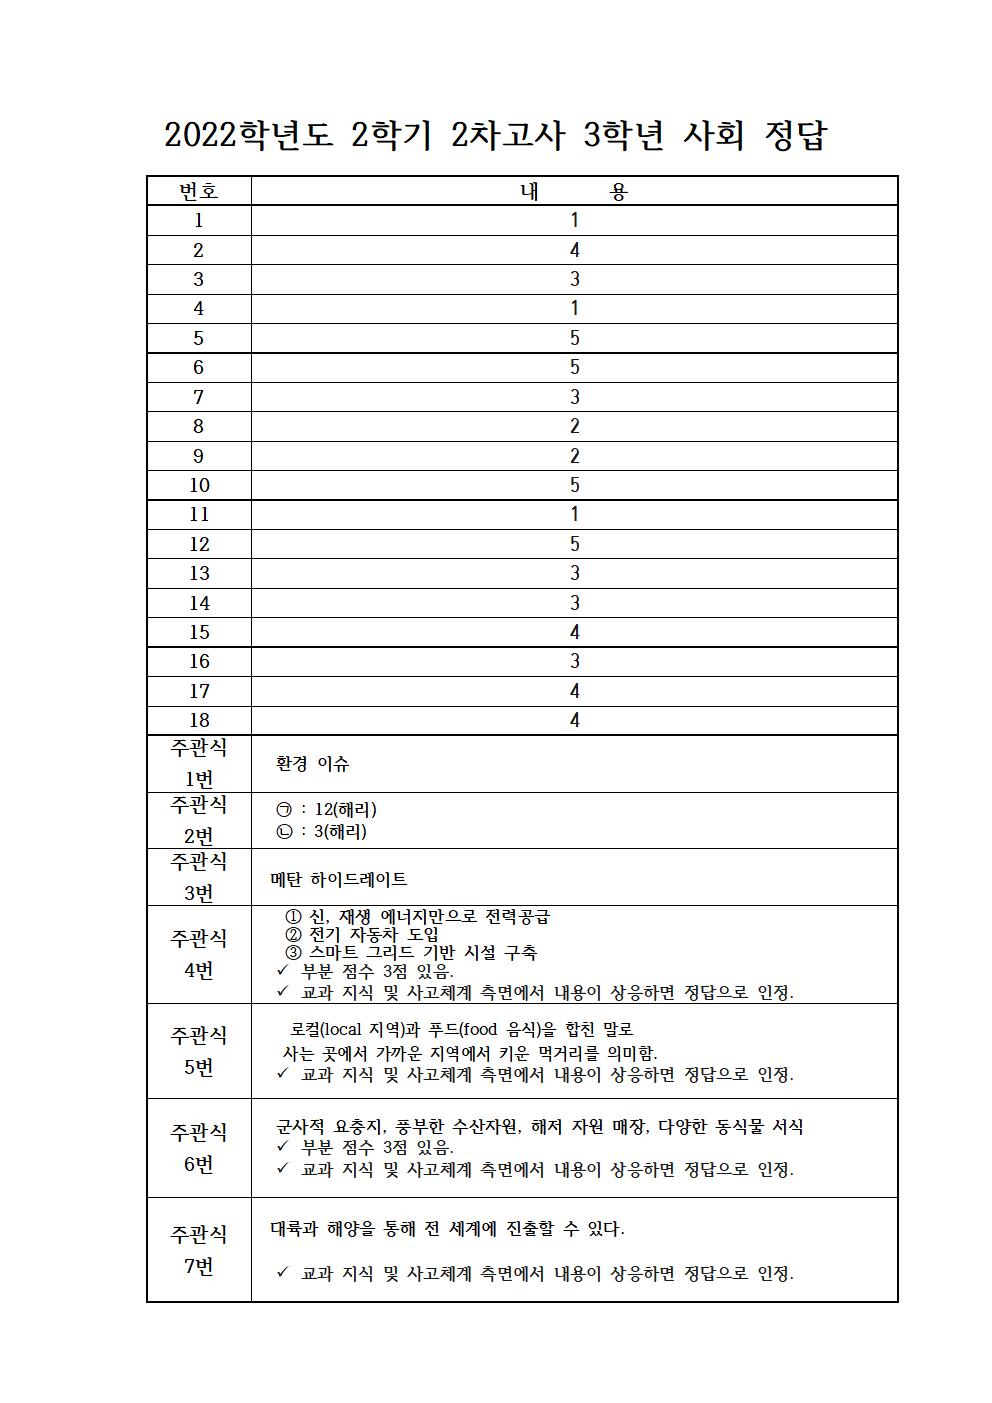 3학년 사회정답공개-22.12.07001